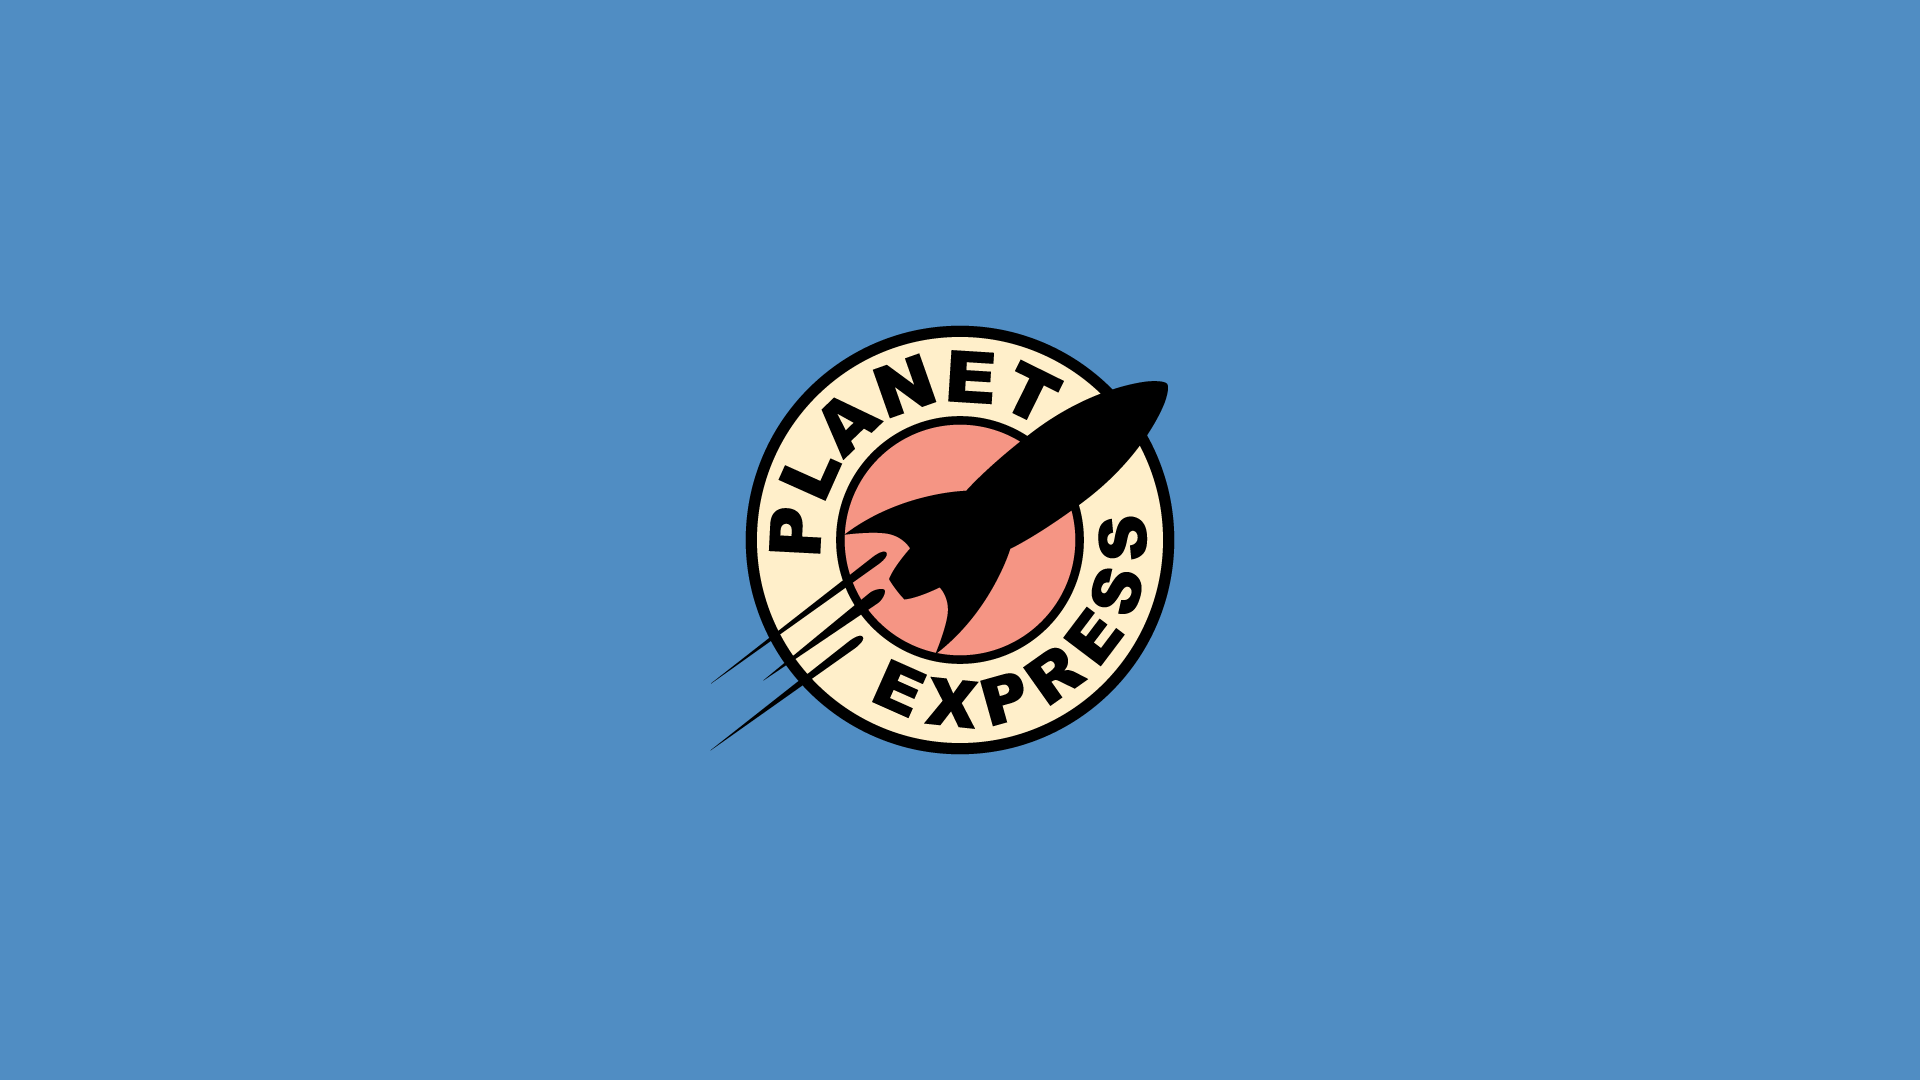 fond d'écran planète express,bleu,police de caractère,illustration,emblème,graphique